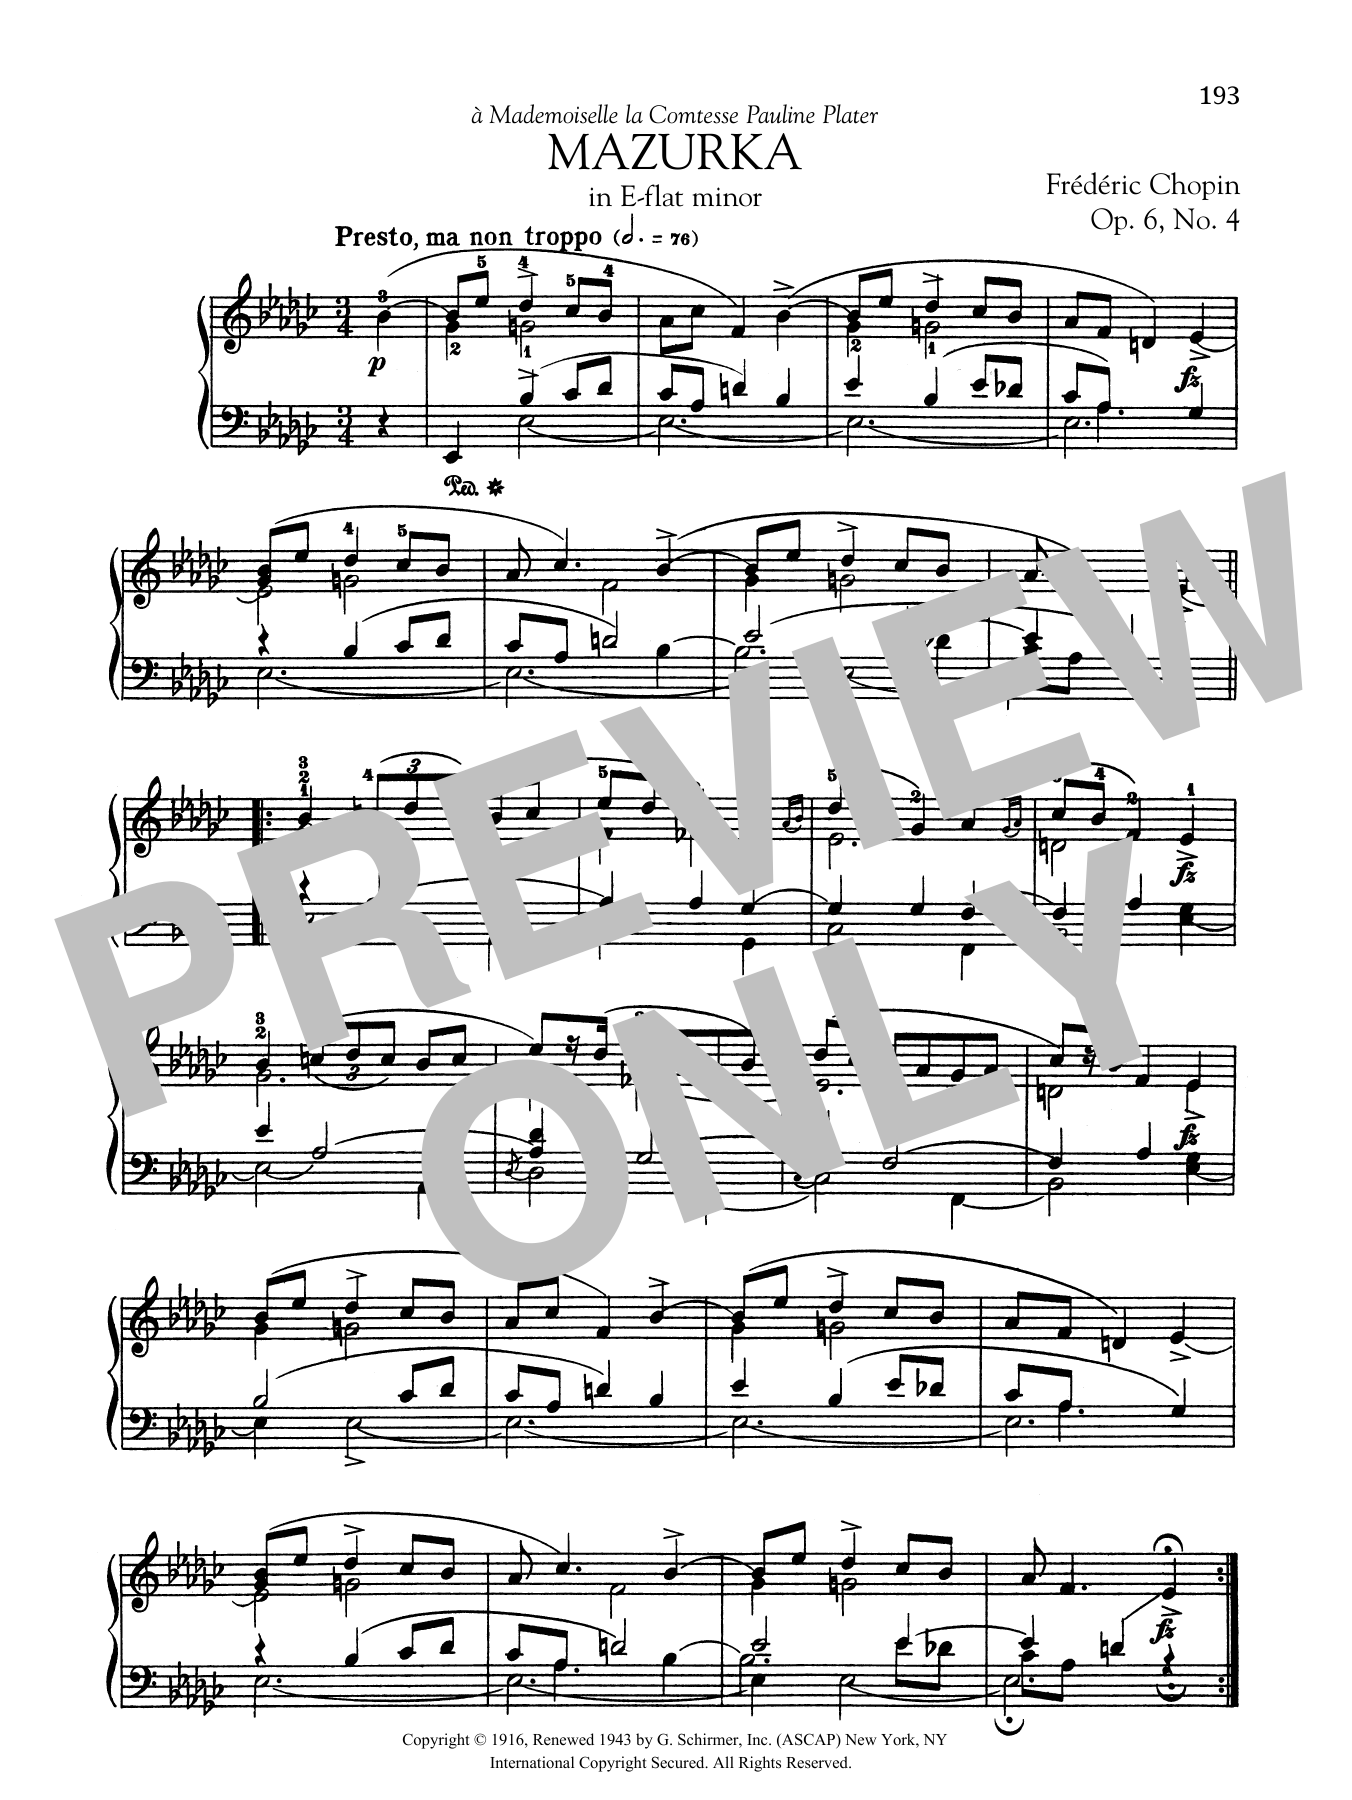 Download Frederic Chopin Mazurka in E-flat minor, Op. 6, No. 4 Sheet Music